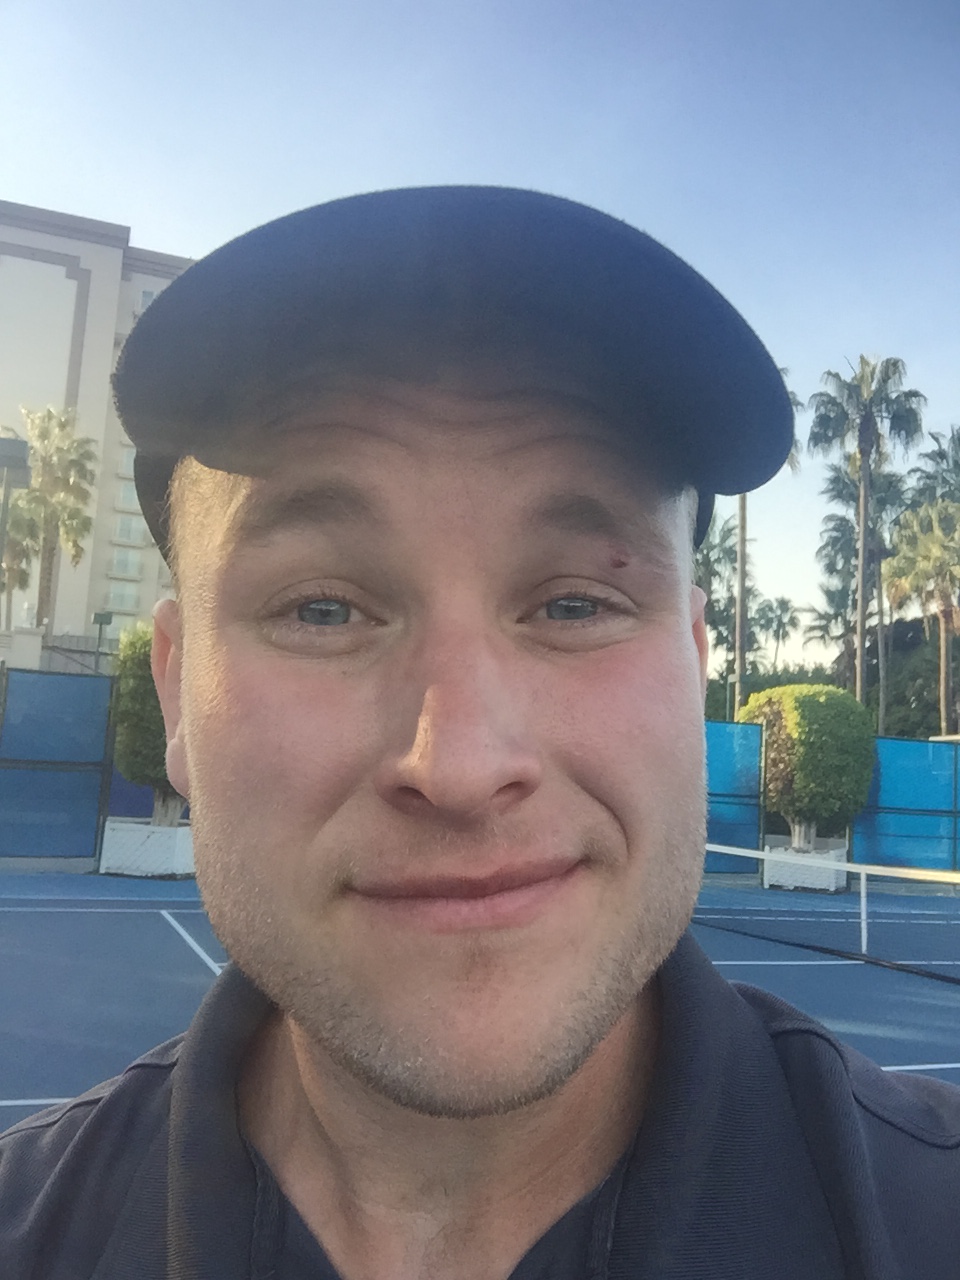 Derek P. teaches tennis lessons in Anaheim, CA